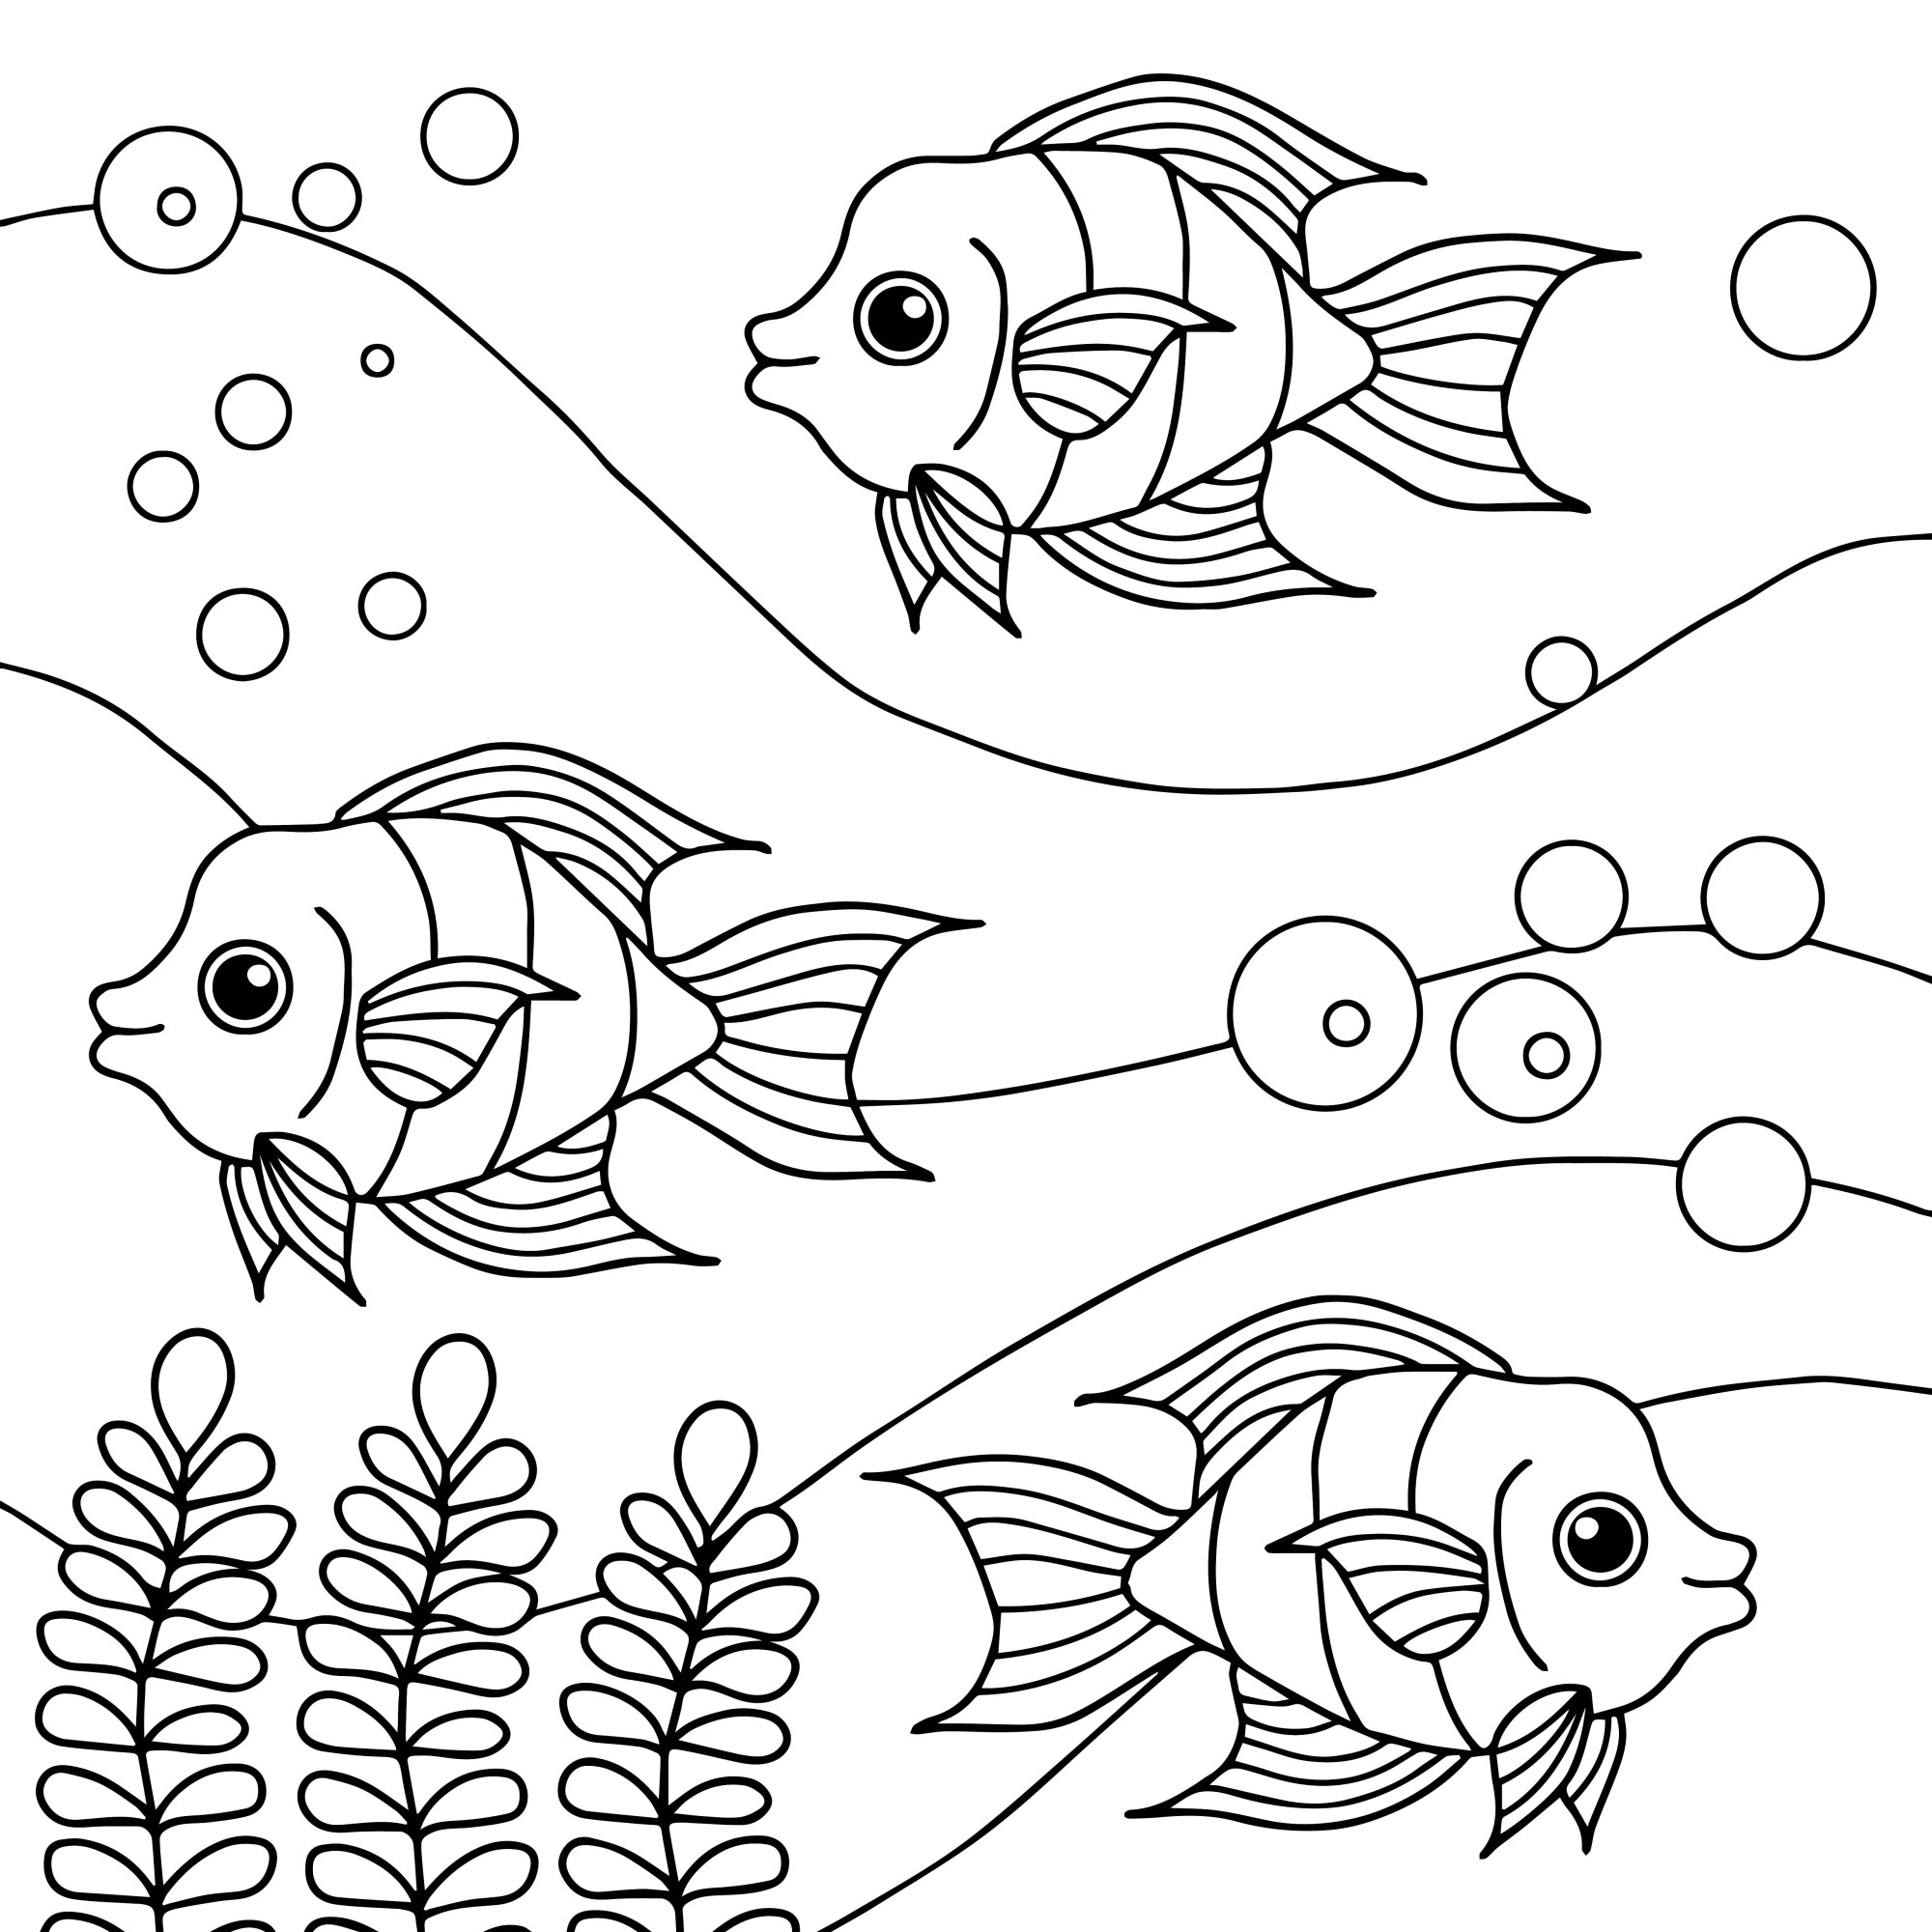 Раскраска для детей: морские рыбы «Морская симфония»